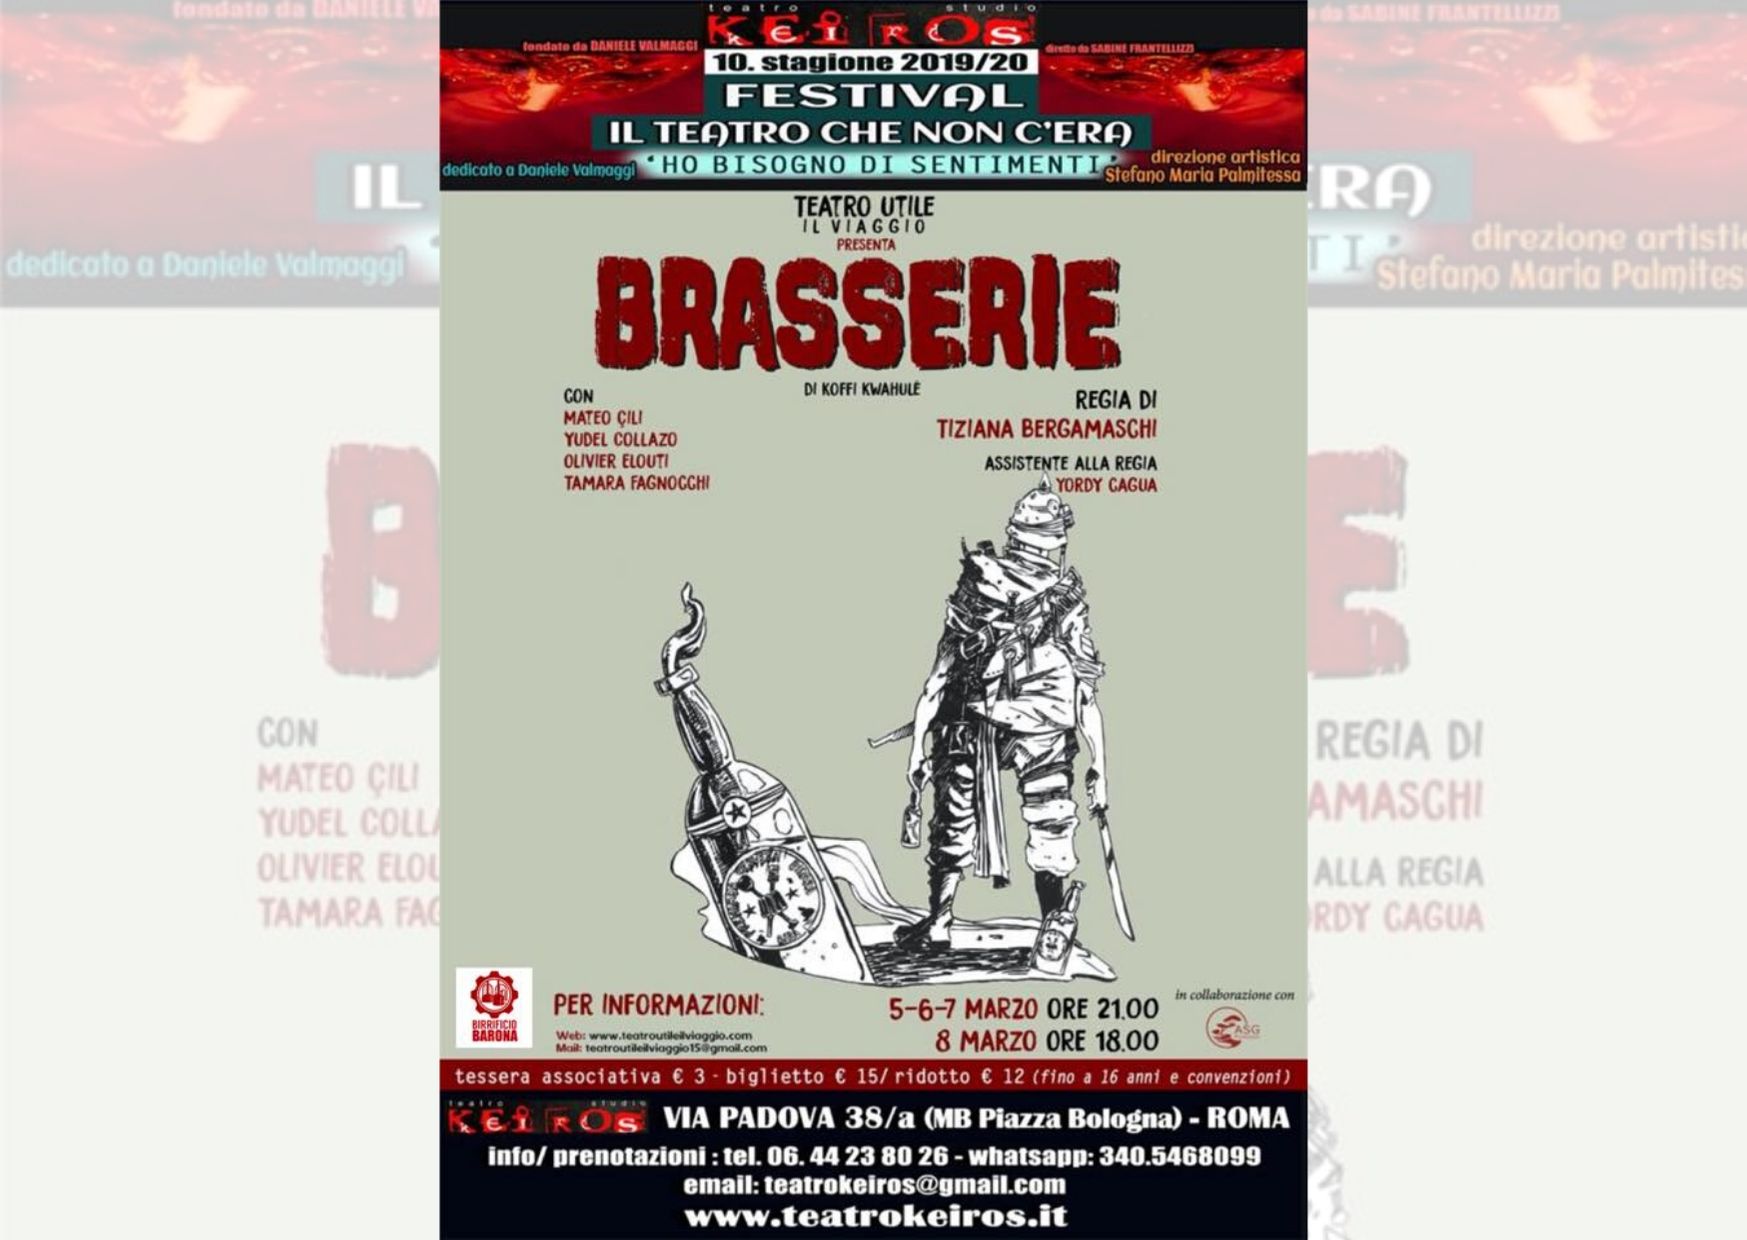 Brasserie di Koffi Kwahulé – Festival “Il teatro che non c’era”